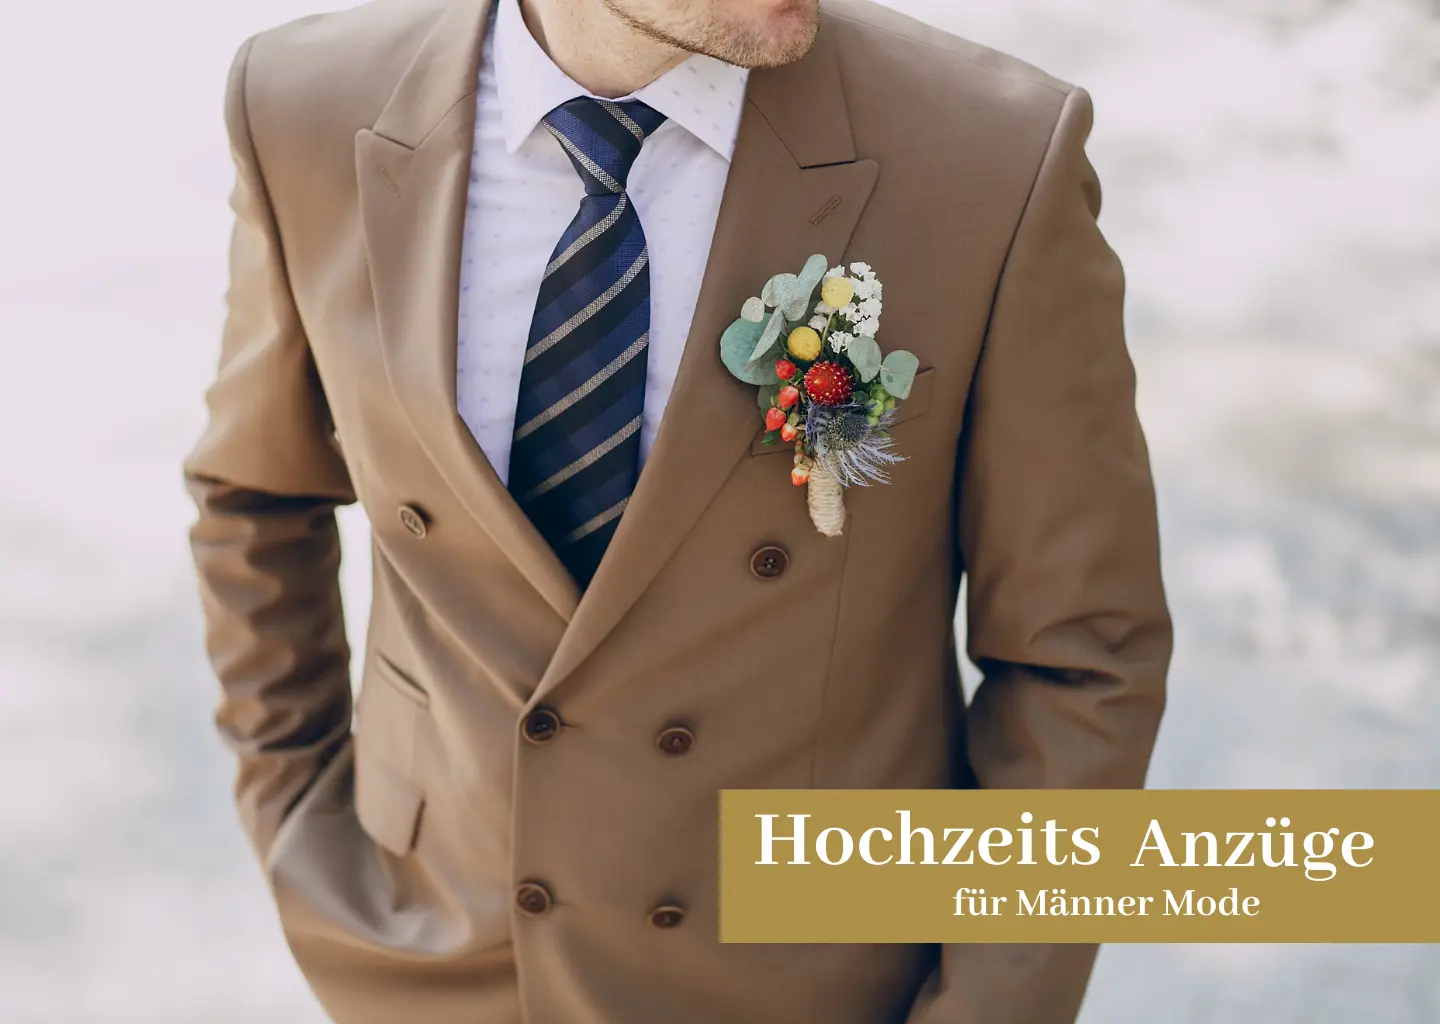 Gekleidet um zu beeindrucken: Hochzeitsanzüg Männer Mode